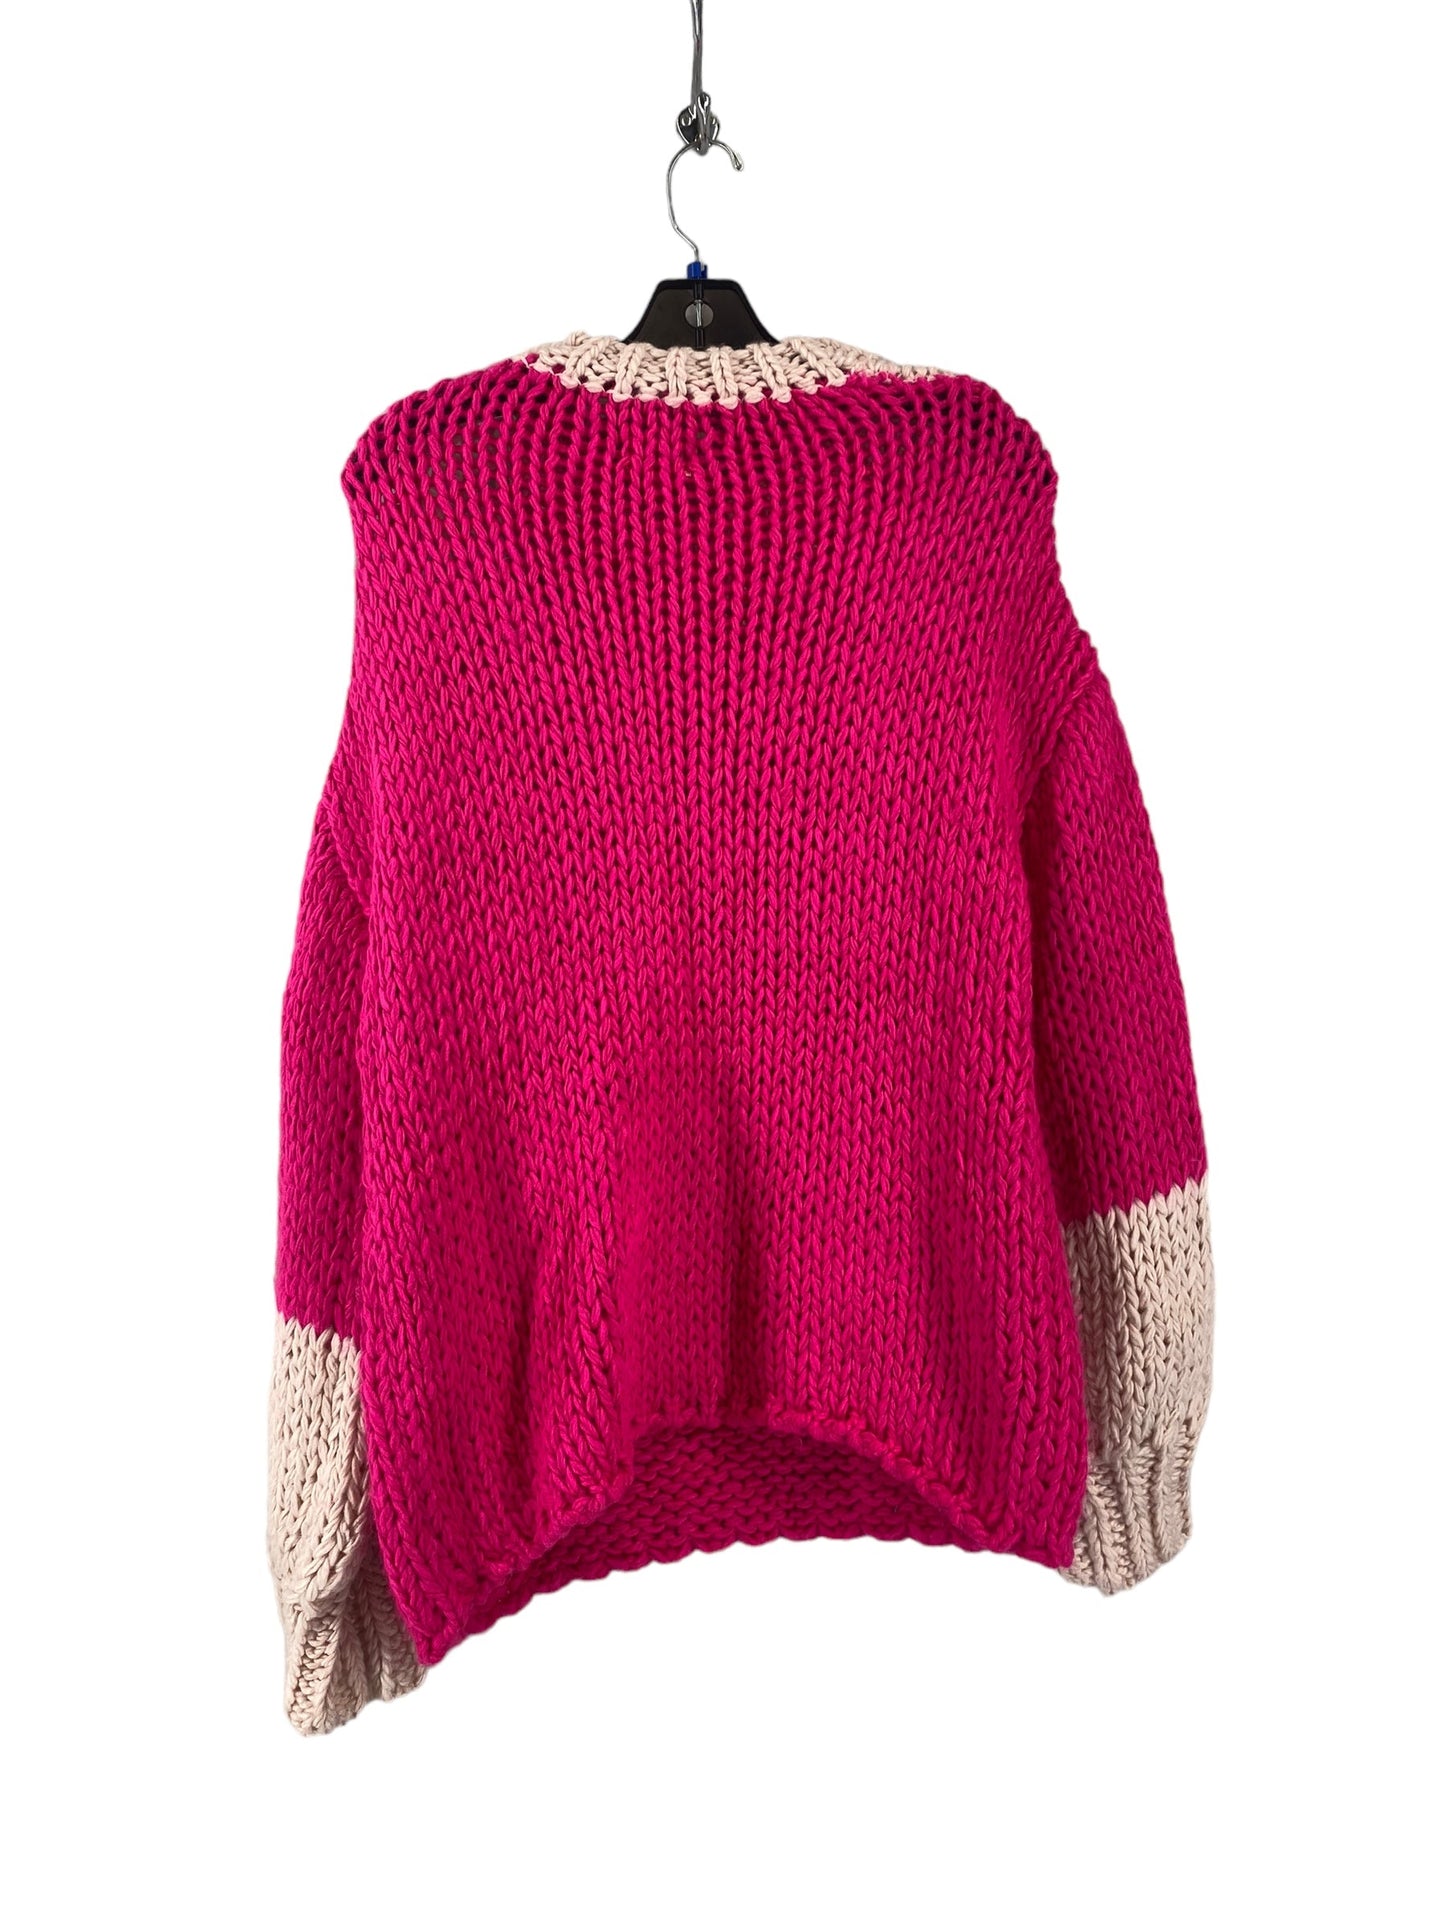 Sweater By Bibi  Size: M